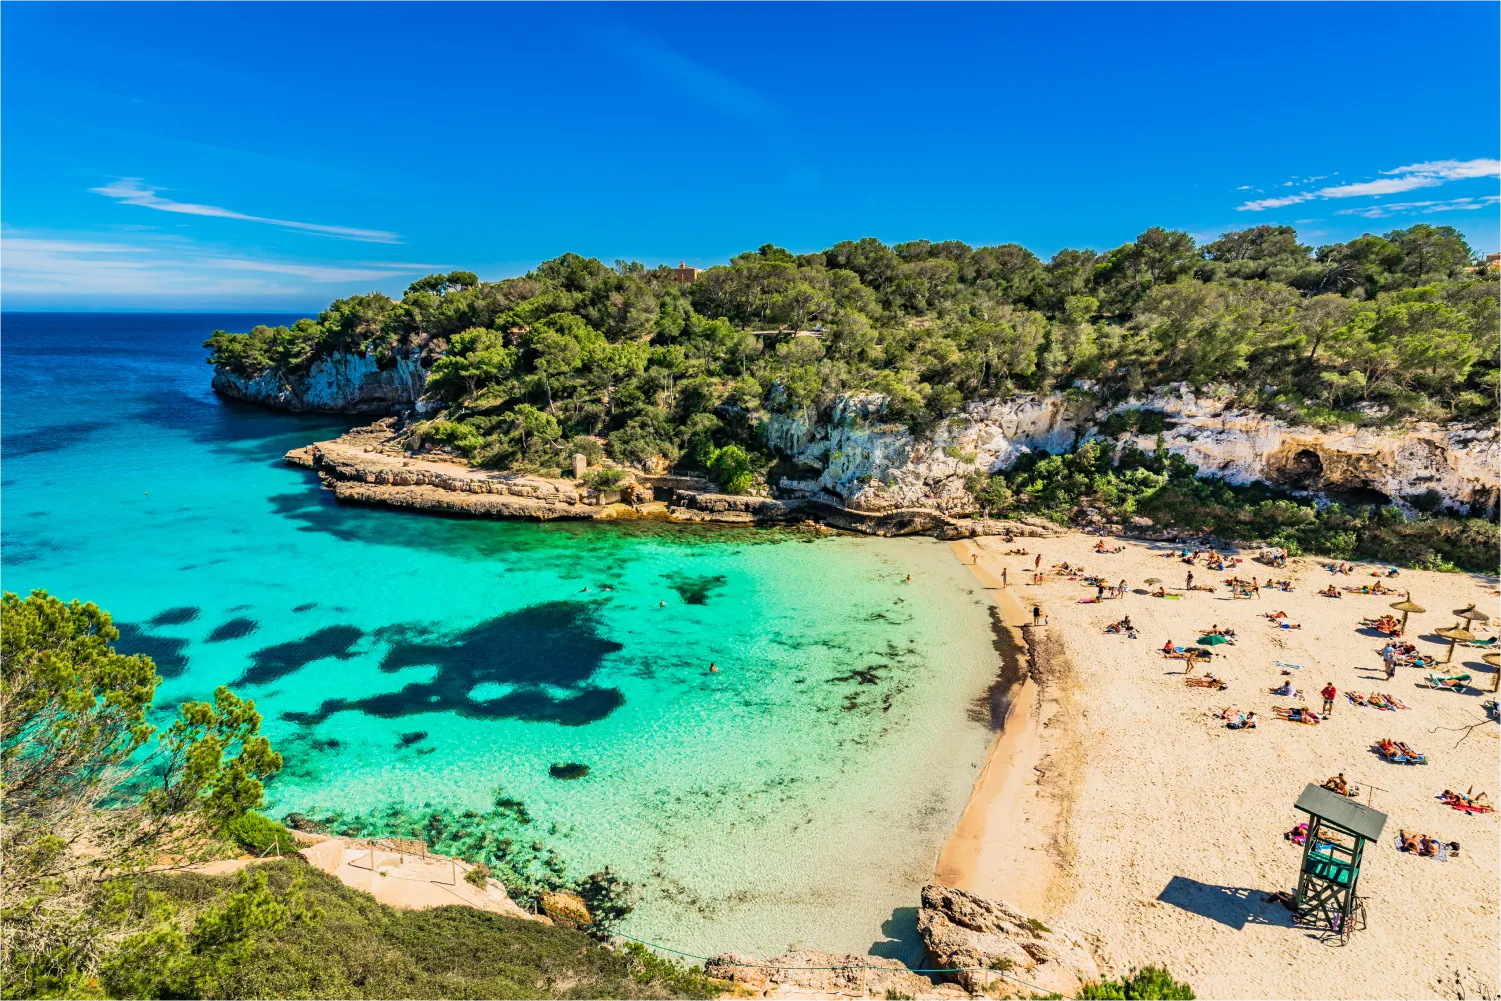 Cala Llombards auf Mallorca. Menschen sonnen sich auf dem Sand, während sie von grünen Felsklippen umgeben sind